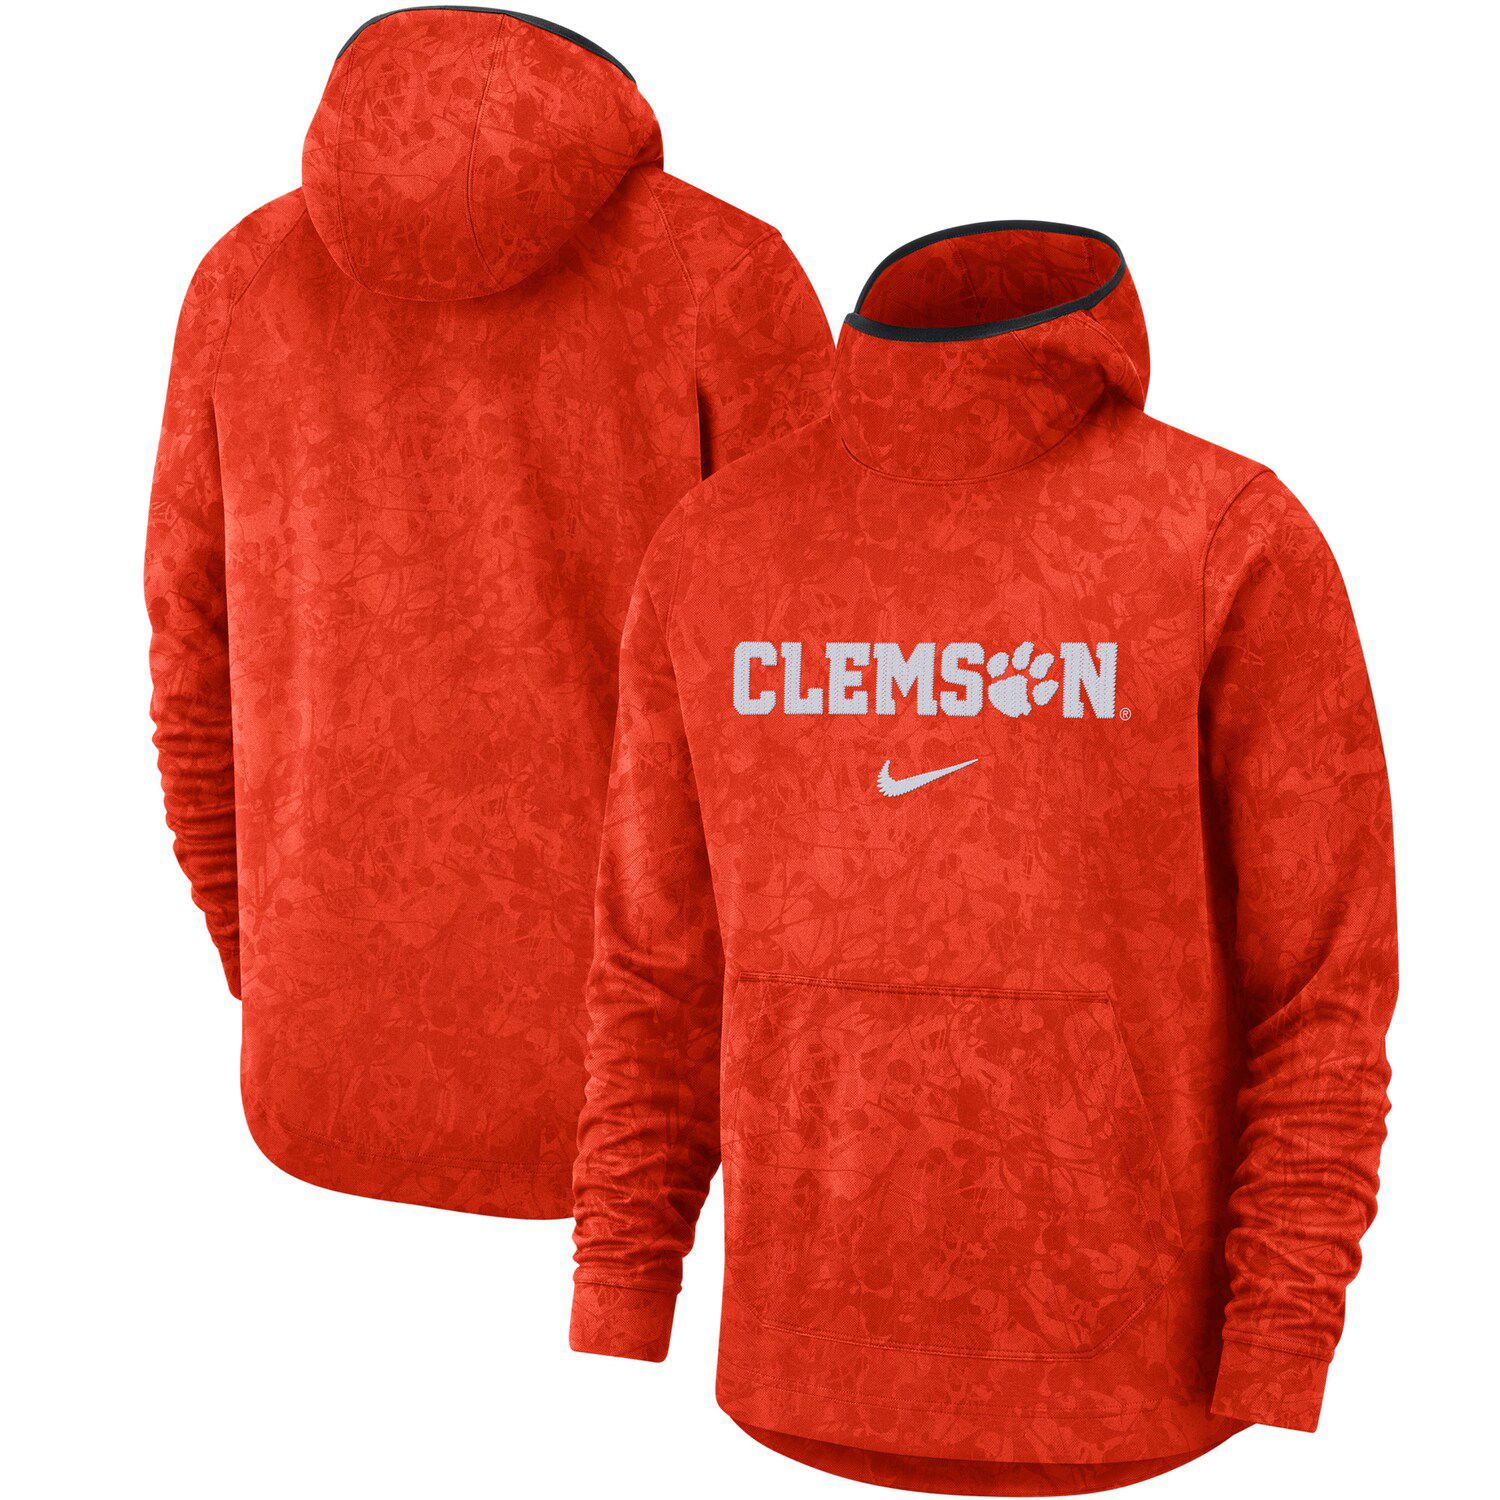 clemson men's hoodie